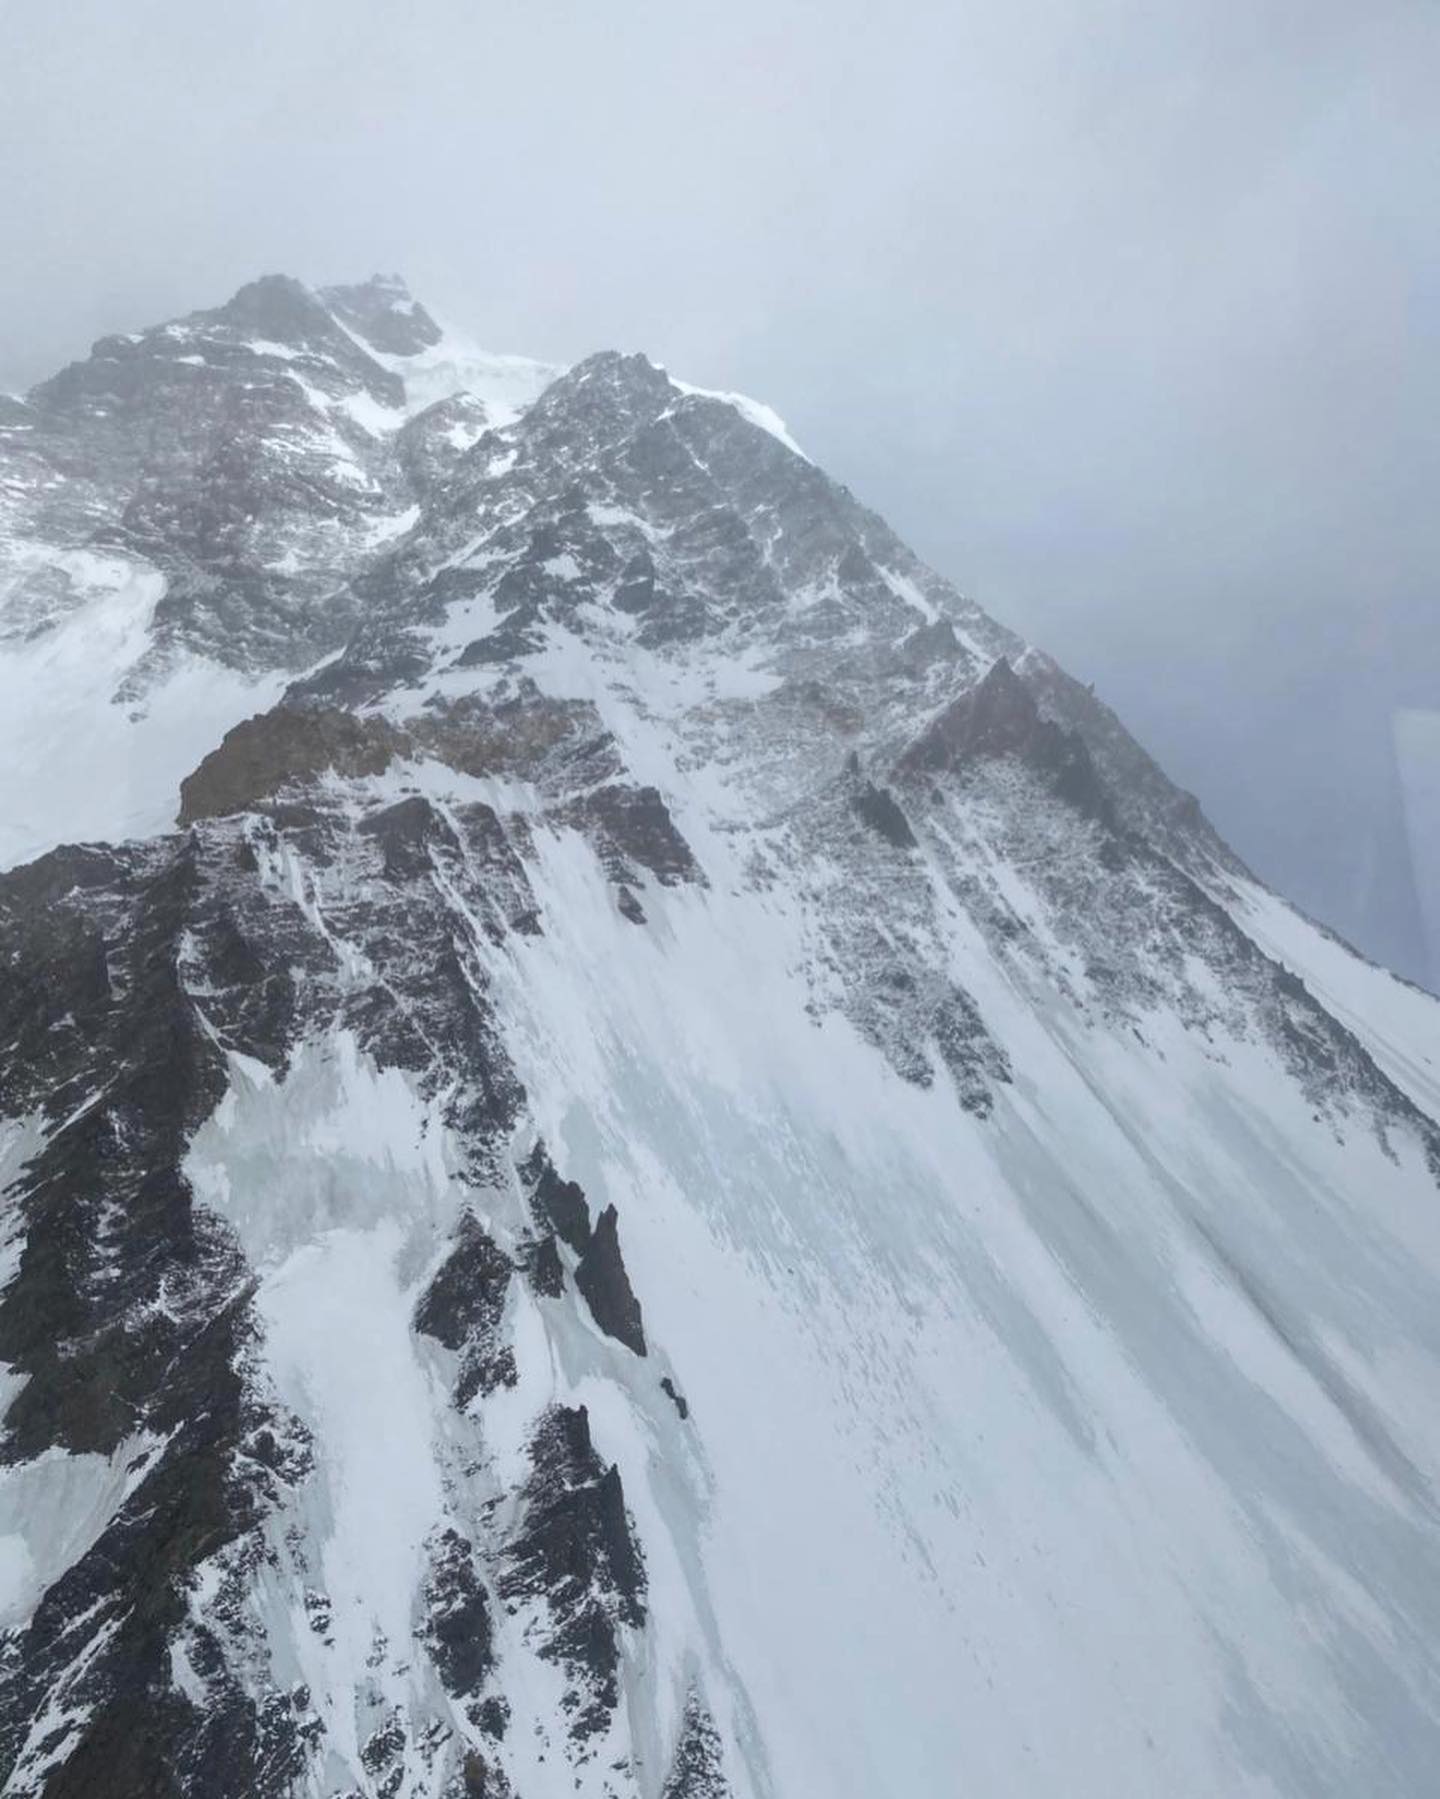 8 февраля состоялся третий облет горы К2 спасателями. Фото Chhang Dawa Sherpa